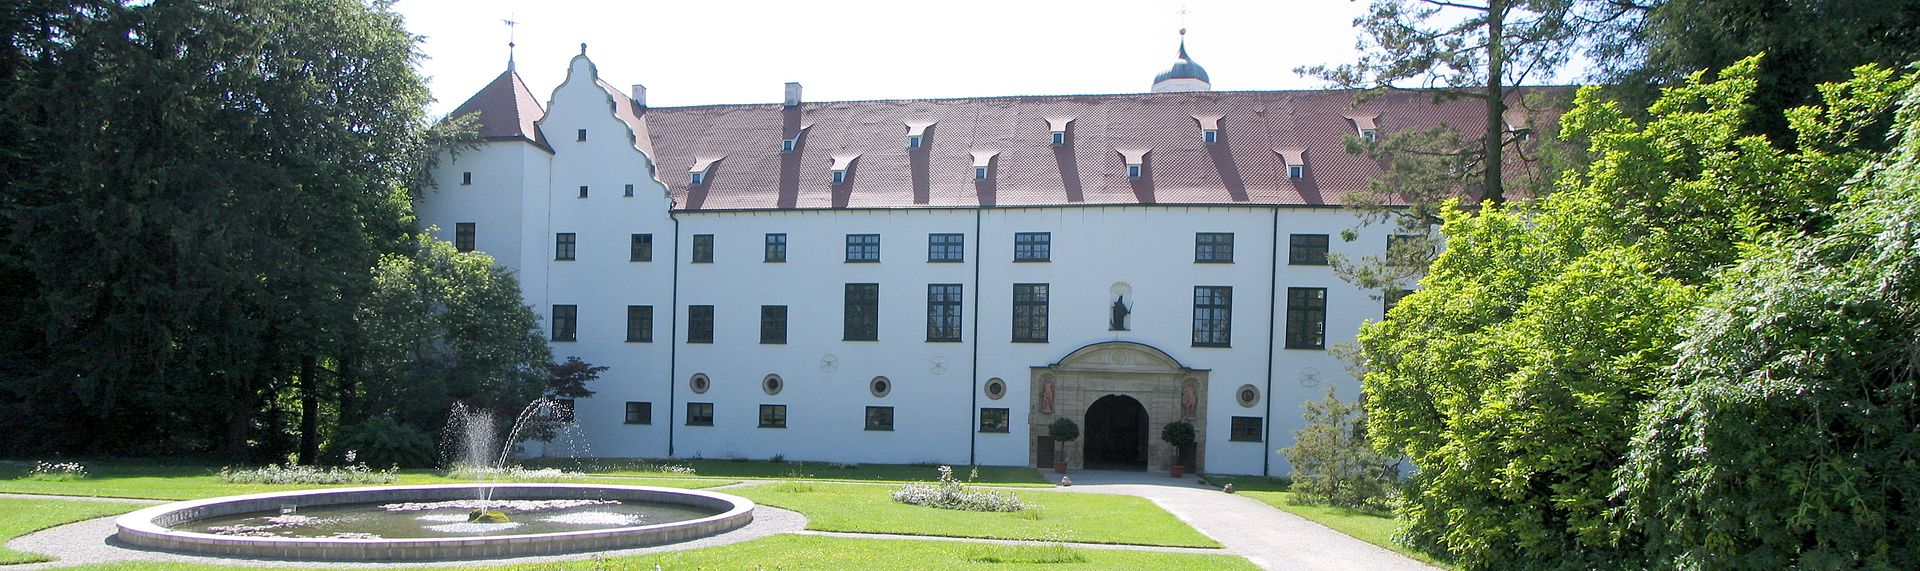 Bild Fuggerschloss Kirchheim